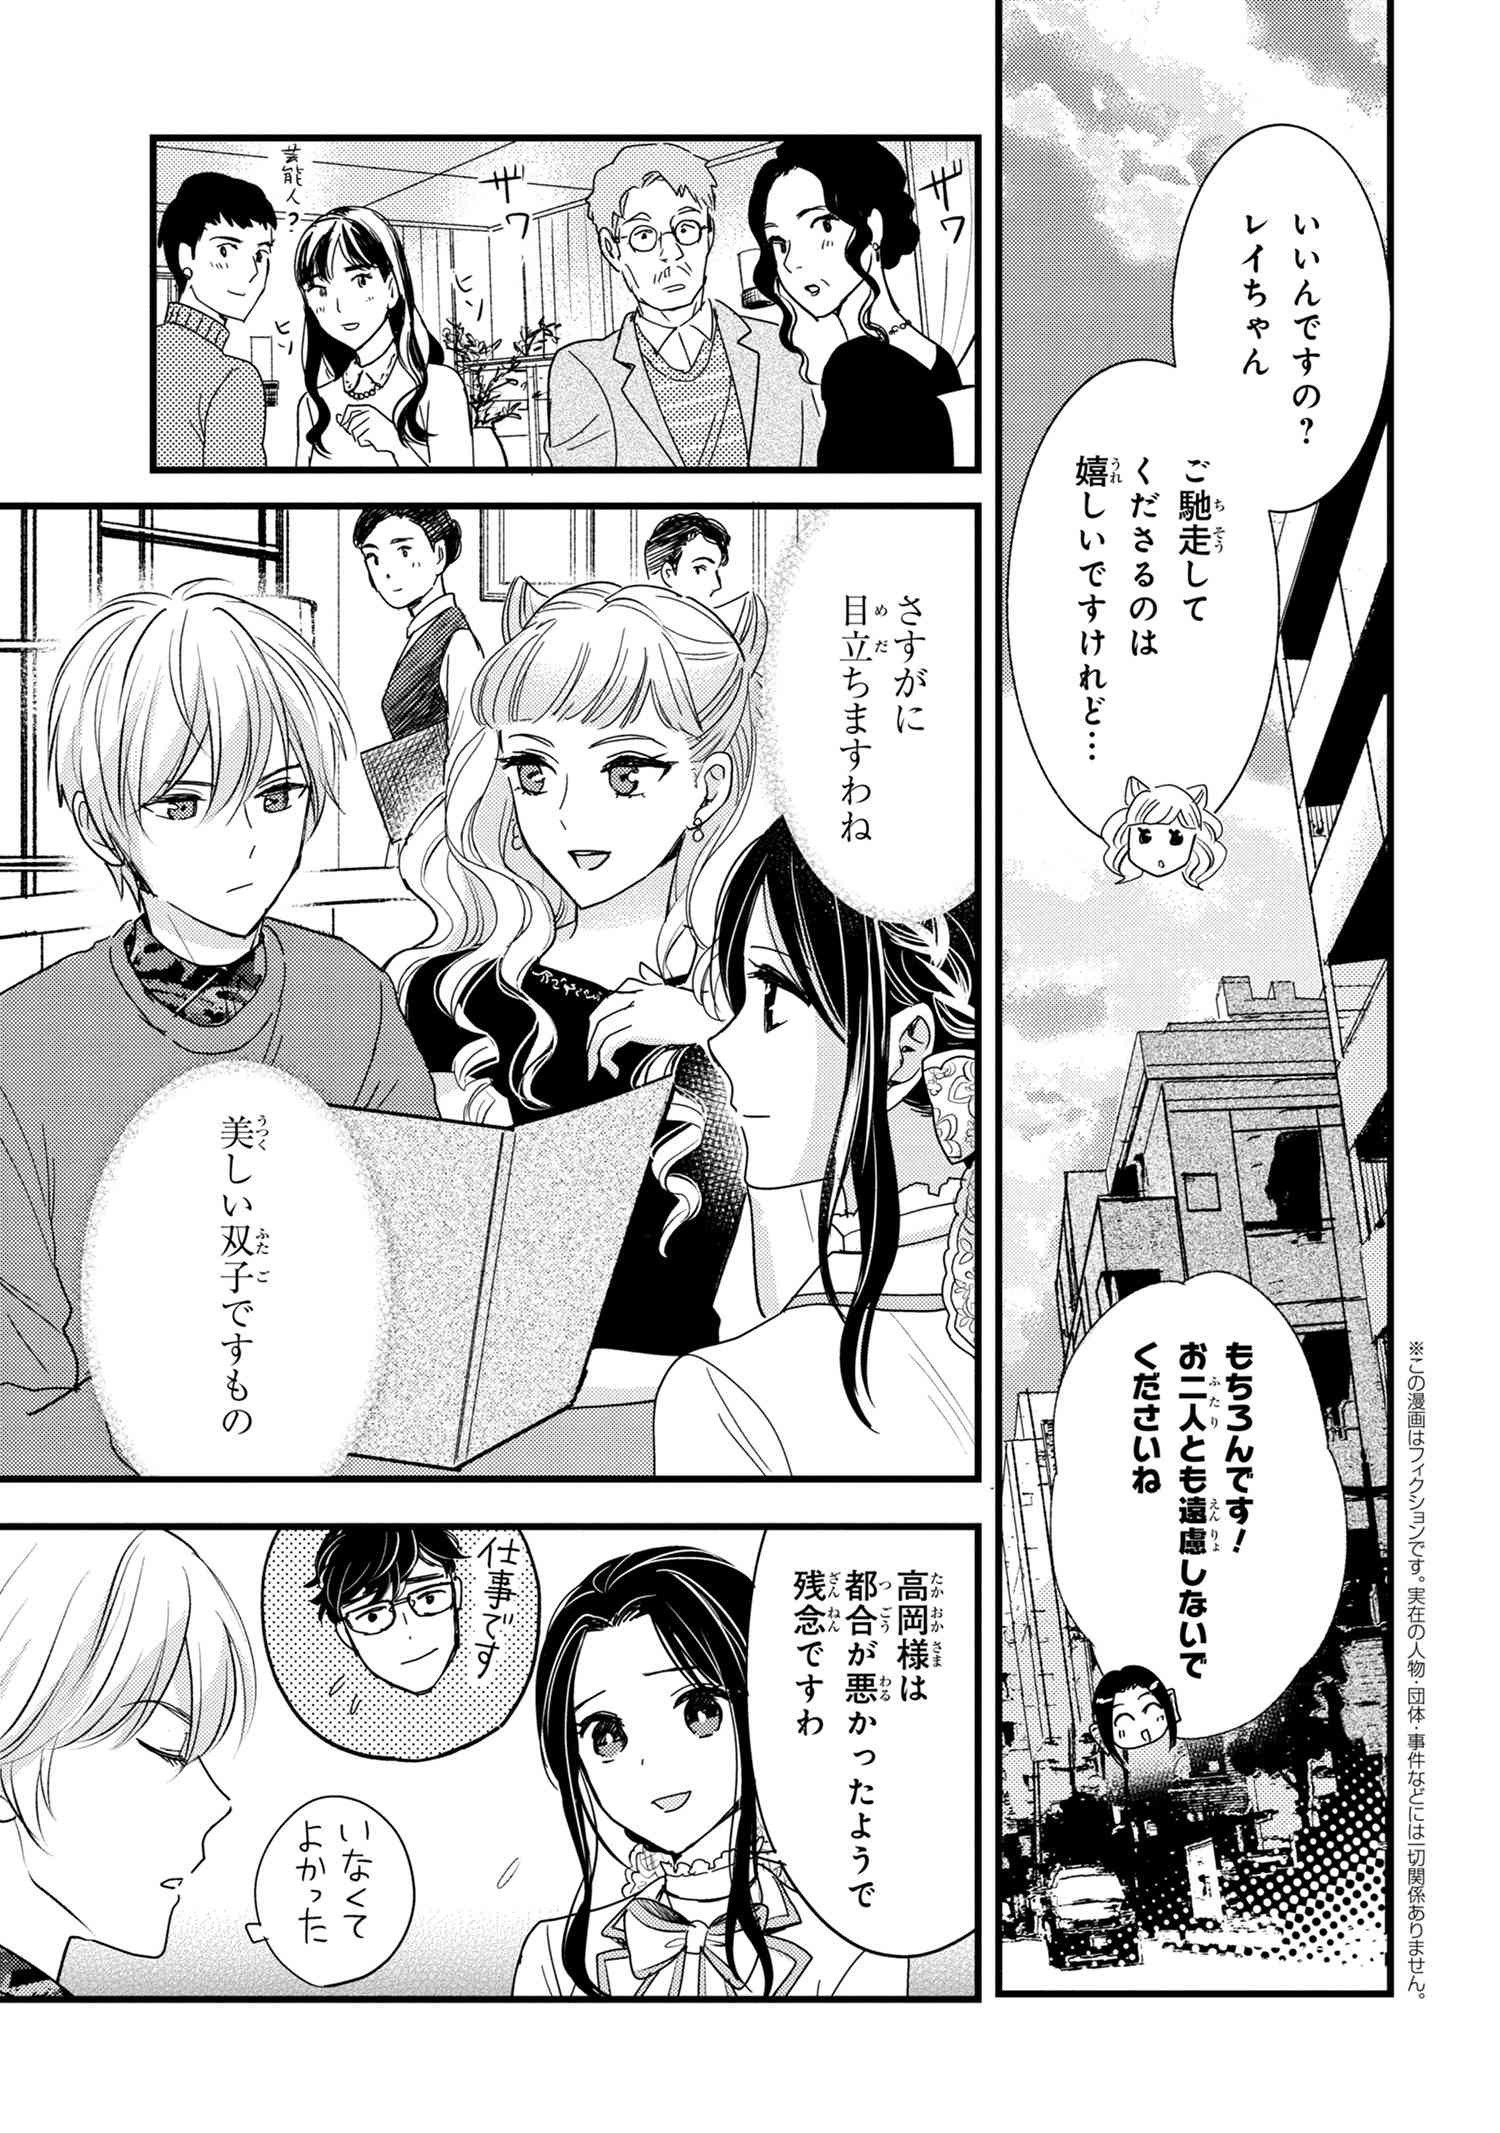 Reiko no Fuugi Akuyaku Reijou to Yobarete imasu ga, tada no Binbou Musume desu - Chapter 15-3 - Page 1